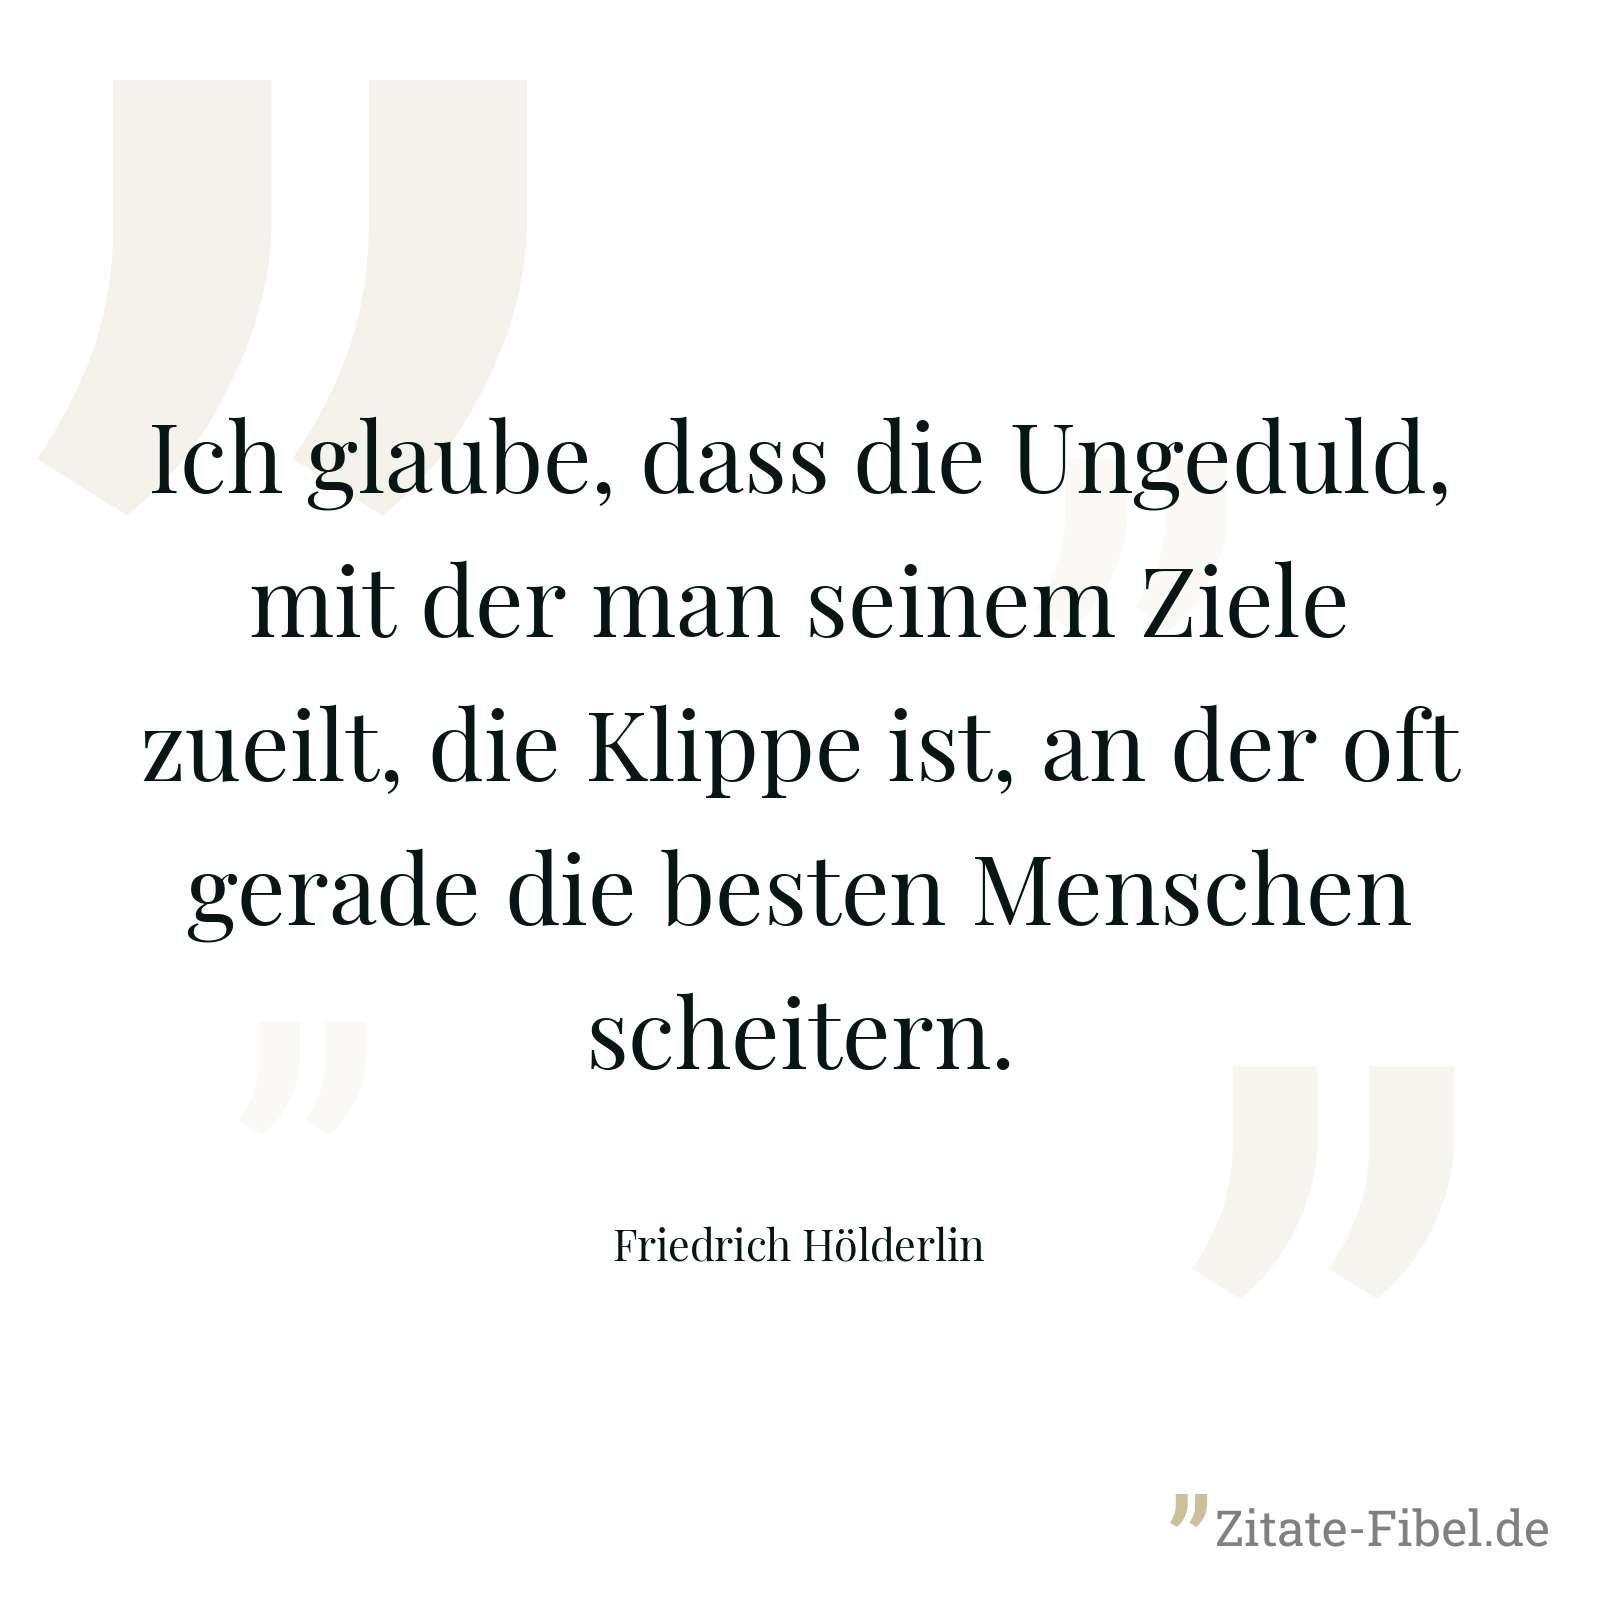 Ich glaube, dass die Ungeduld, mit der man seinem Ziele zueilt, die Klippe ist, an der oft gerade die besten Menschen scheitern. - Friedrich Hölderlin